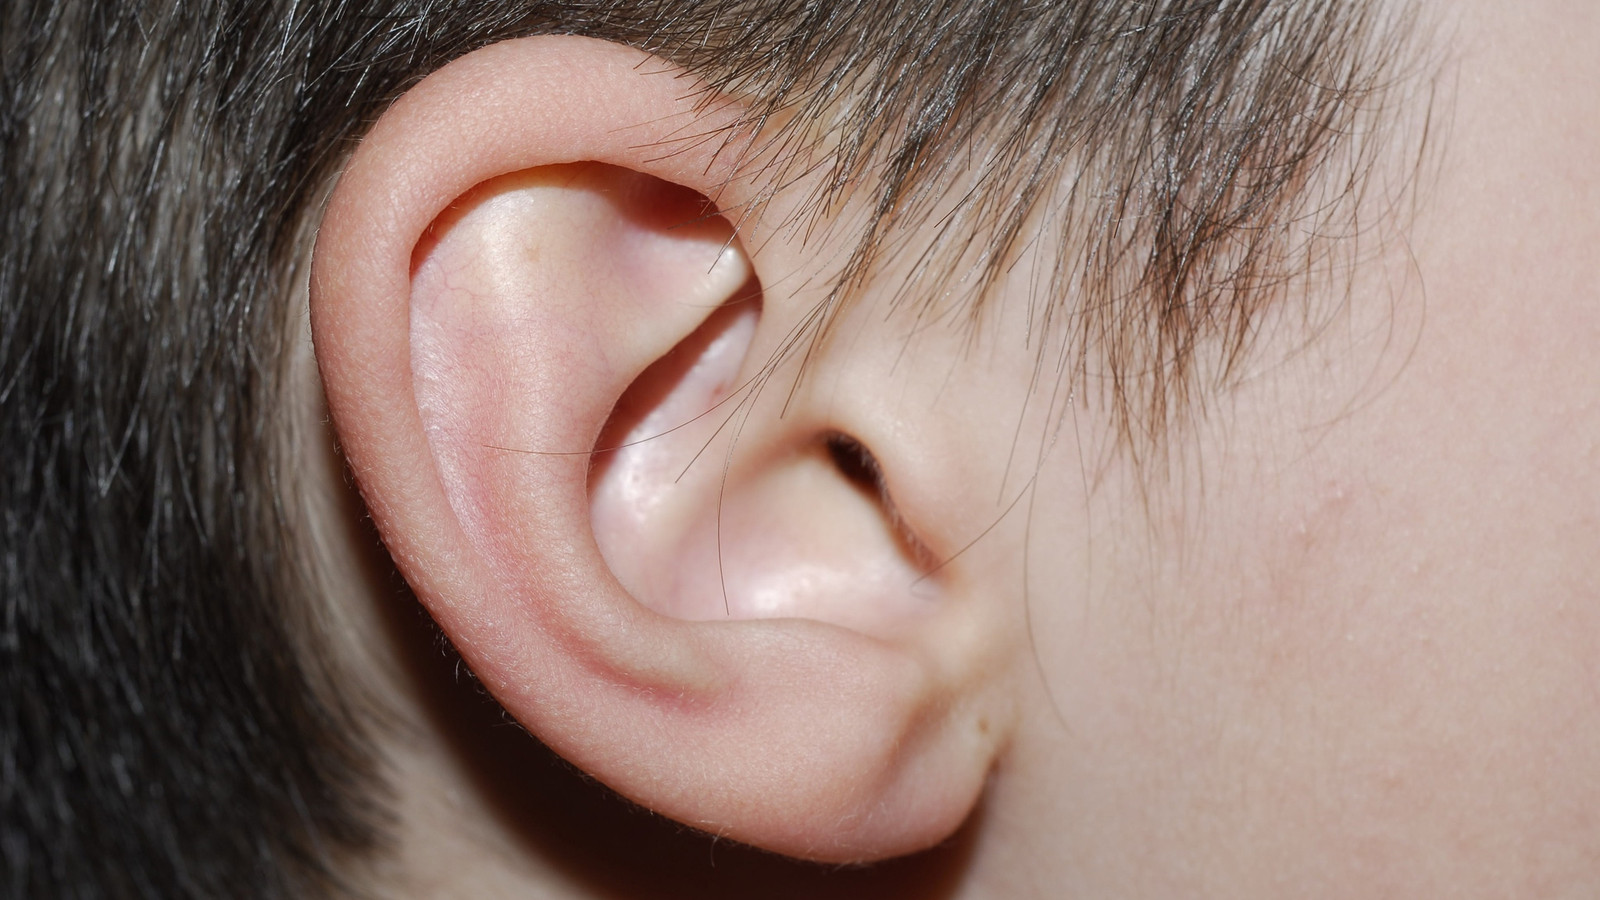 Показать картинку уха. Ухо. Детское ухо. Левое ухо.